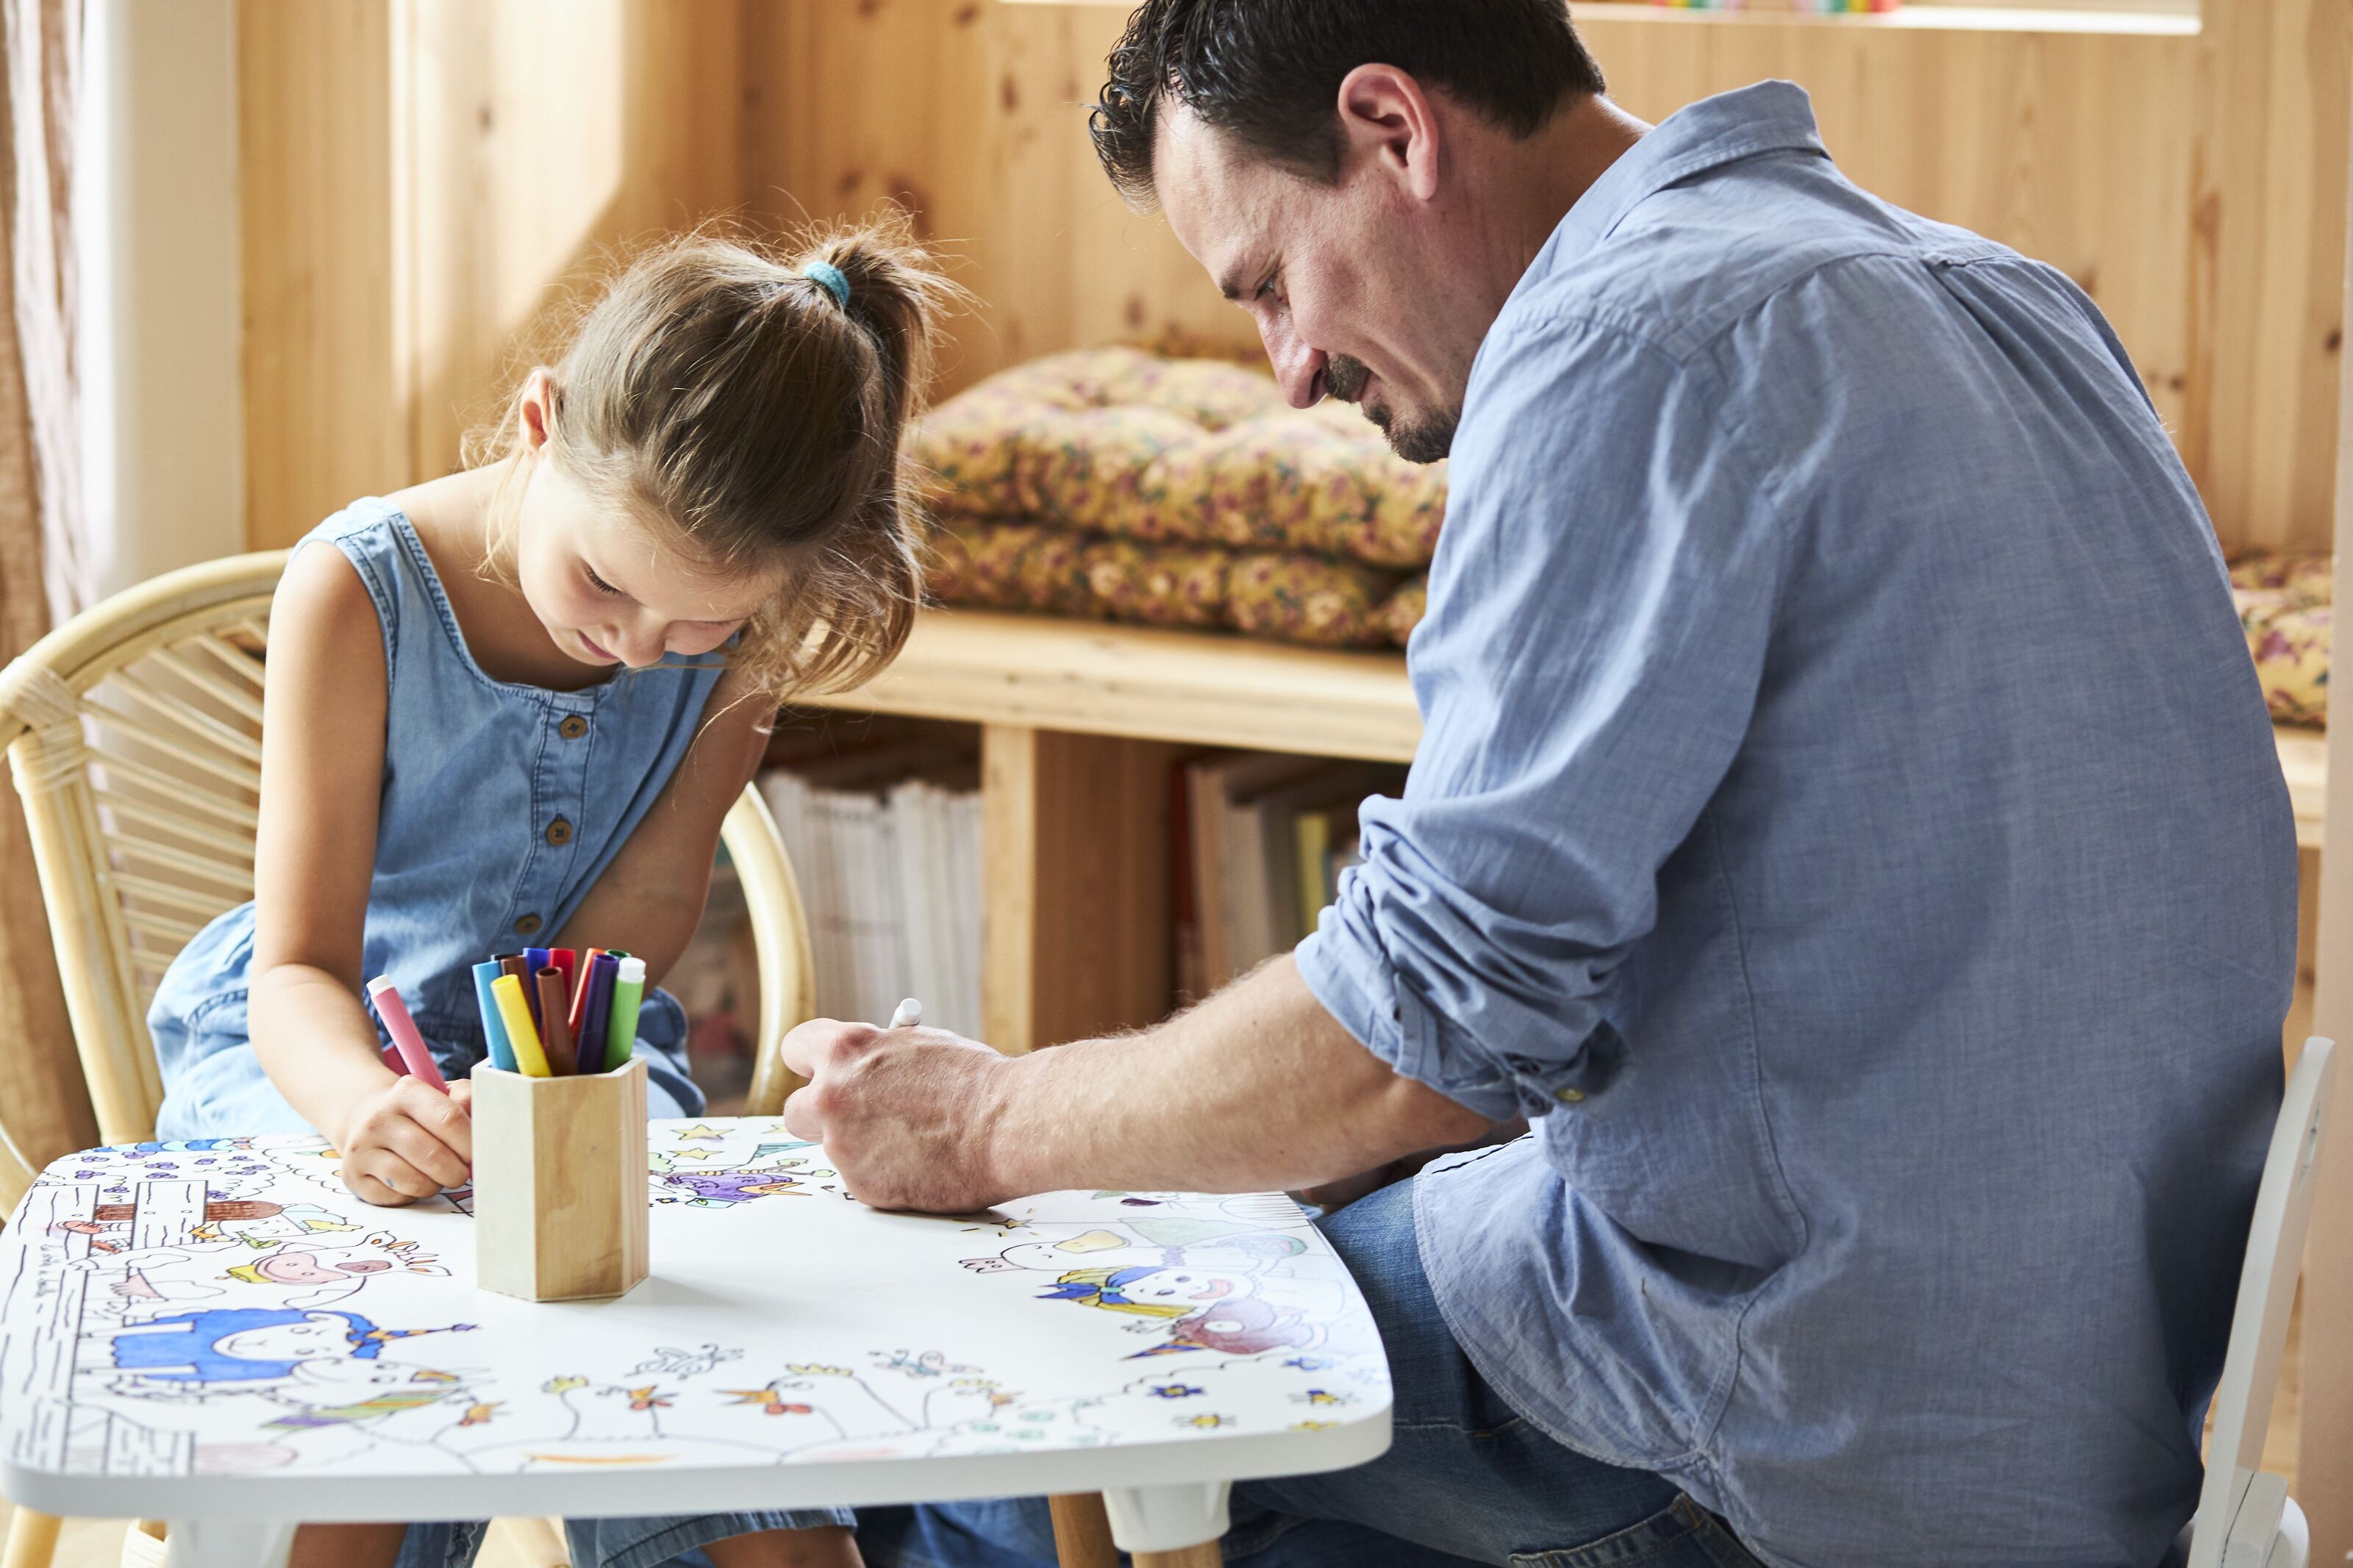 La table à colorier la Coloritable, table d'activité pour Enfant